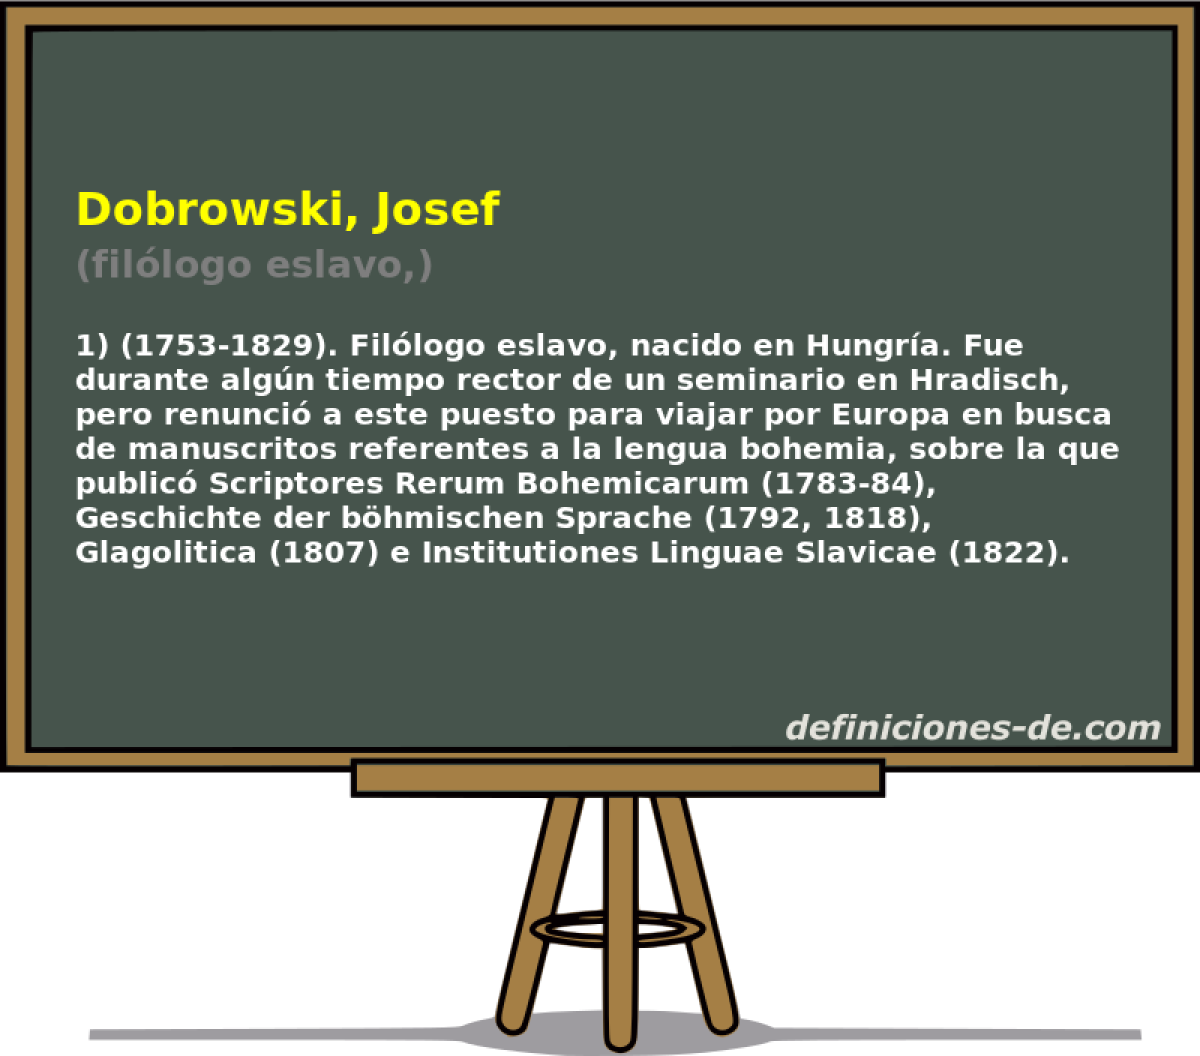 Dobrowski, Josef (fillogo eslavo,)